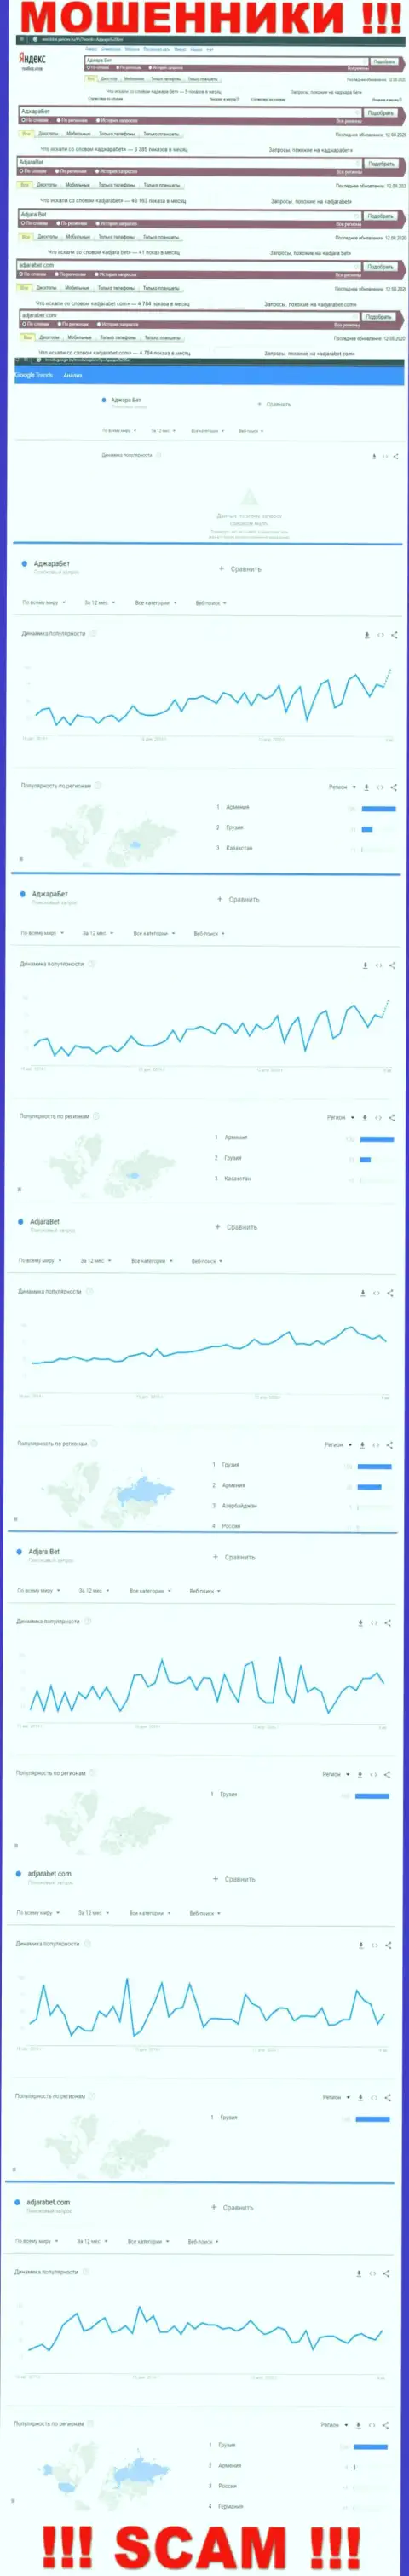 Статистические показатели количества поисковых запросов во всемирной паутине по жуликам AdjaraBet